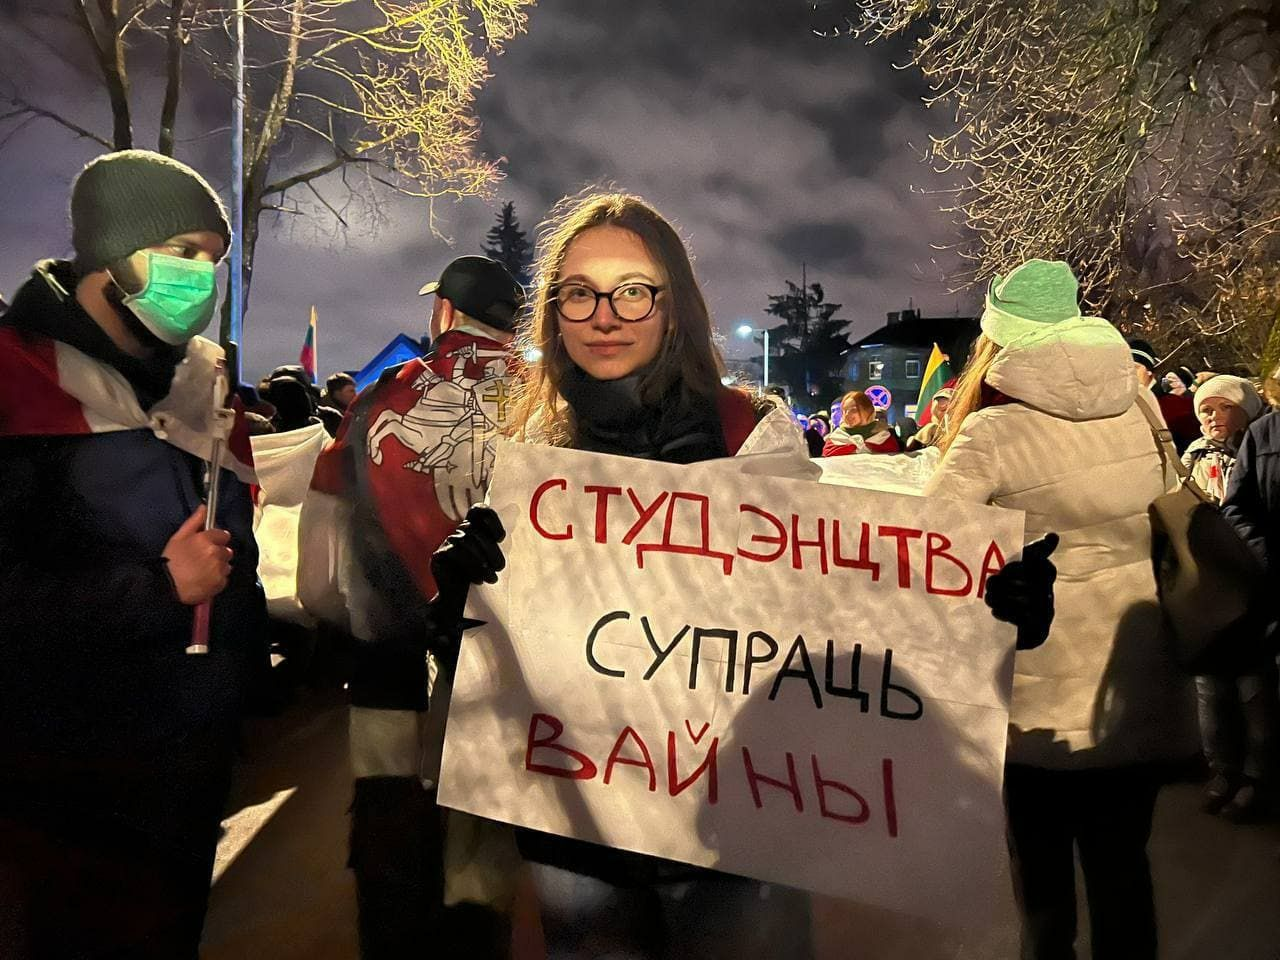 Гражданское общество добивается легализации беларусов в Европе, демократические силы формируют антивоенную повестку